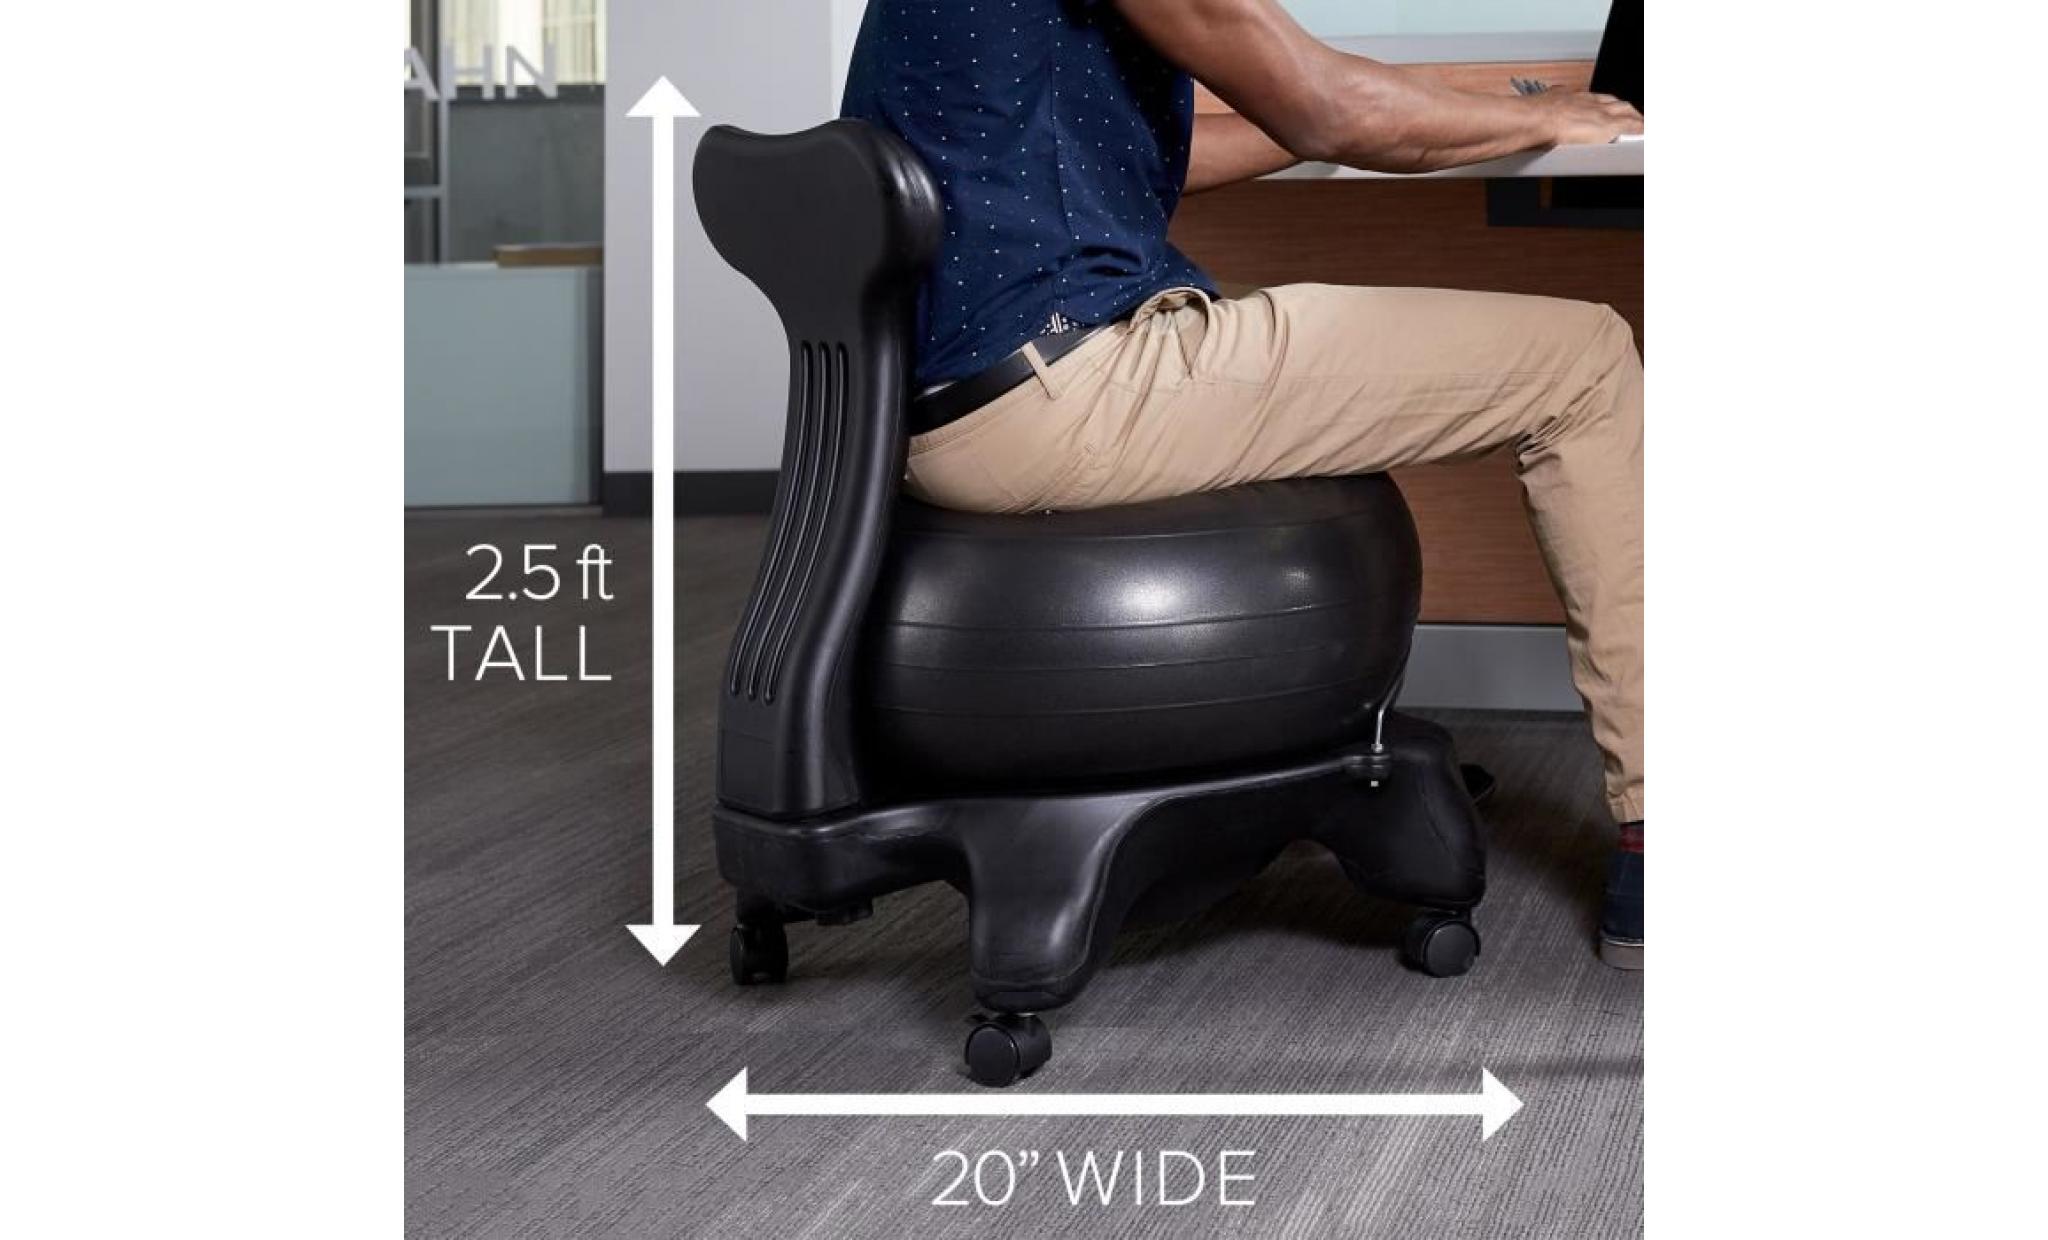 classique balance ball chair   yoga exercice stability ball haut de gamme chaise ergonomique pour la maison et offi wt4dl pas cher